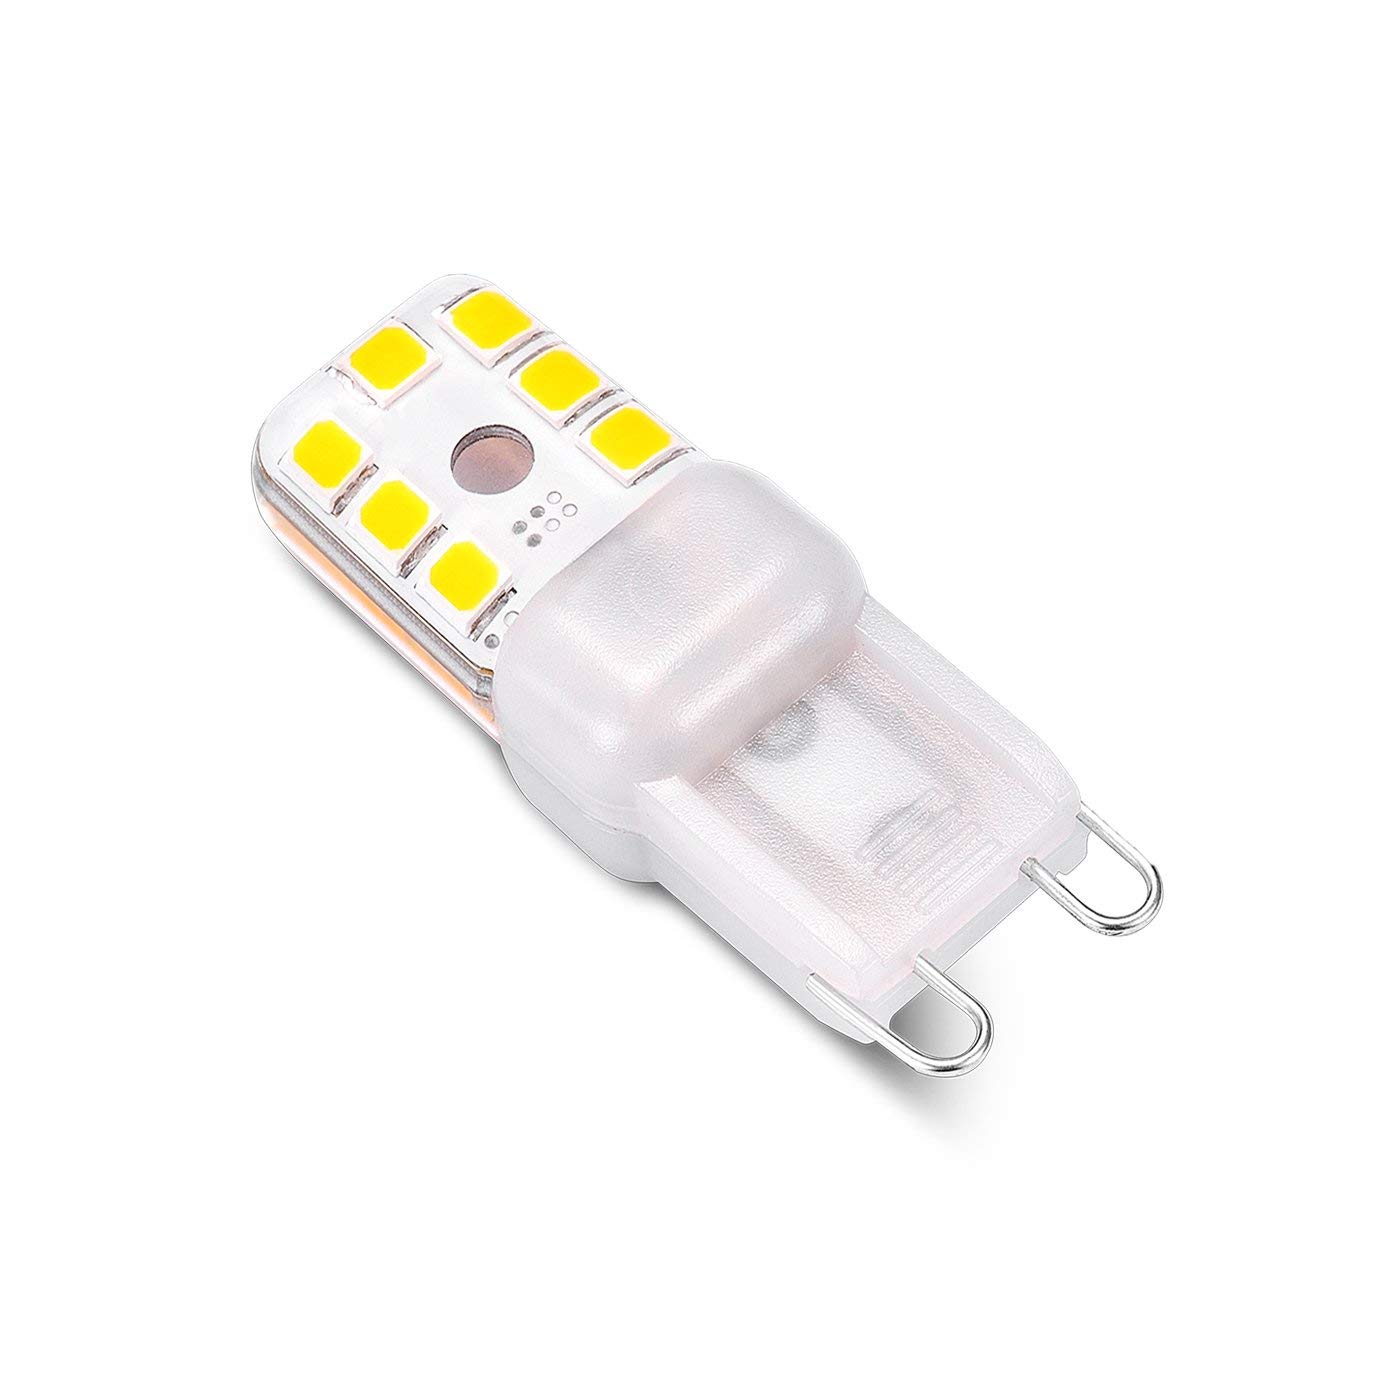 G9 Led Bulb Bi Pin Base G9 6w Led Bulbs Daylight White 6000k G9 Light Bulbs